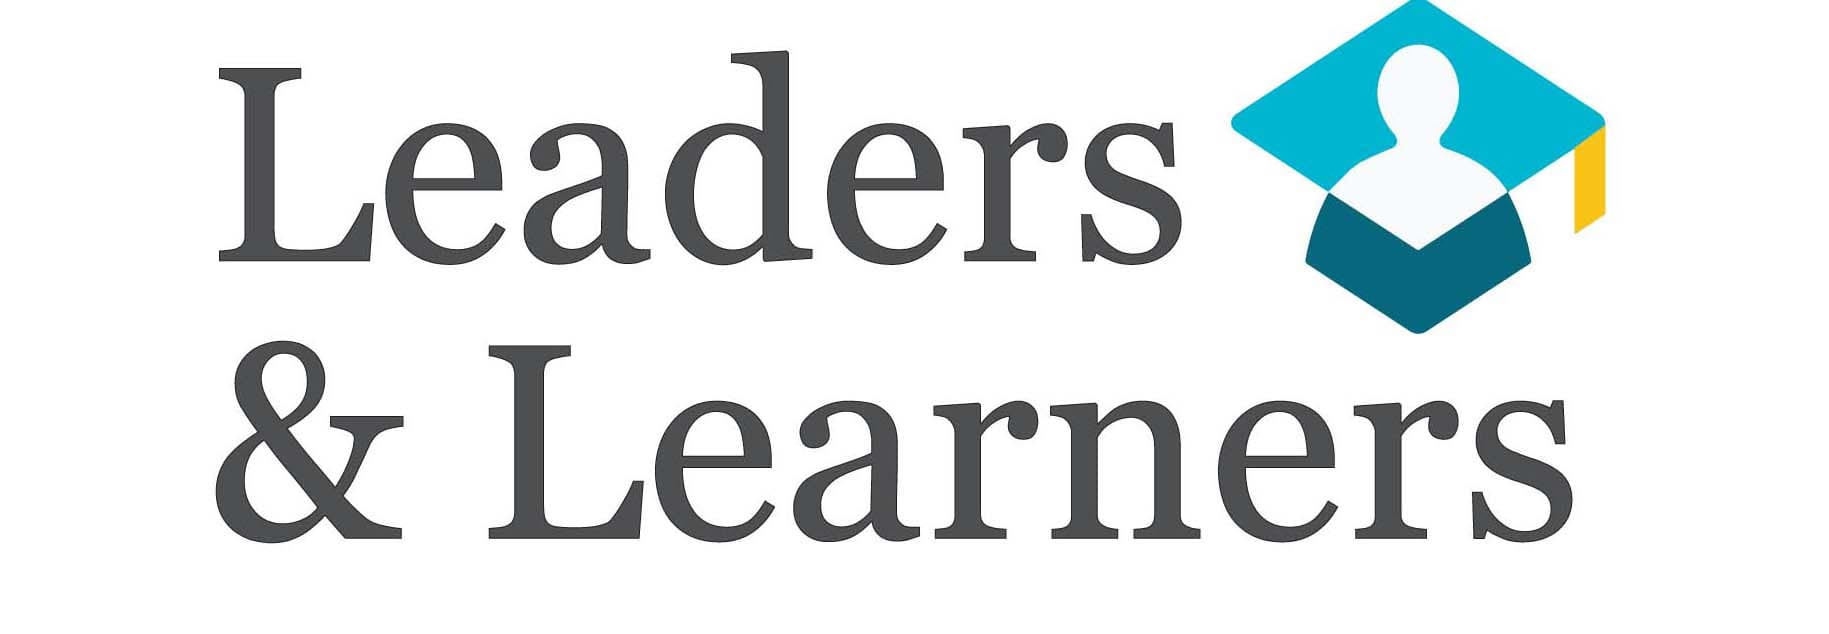 Leaders & Learners_logo minus tagline